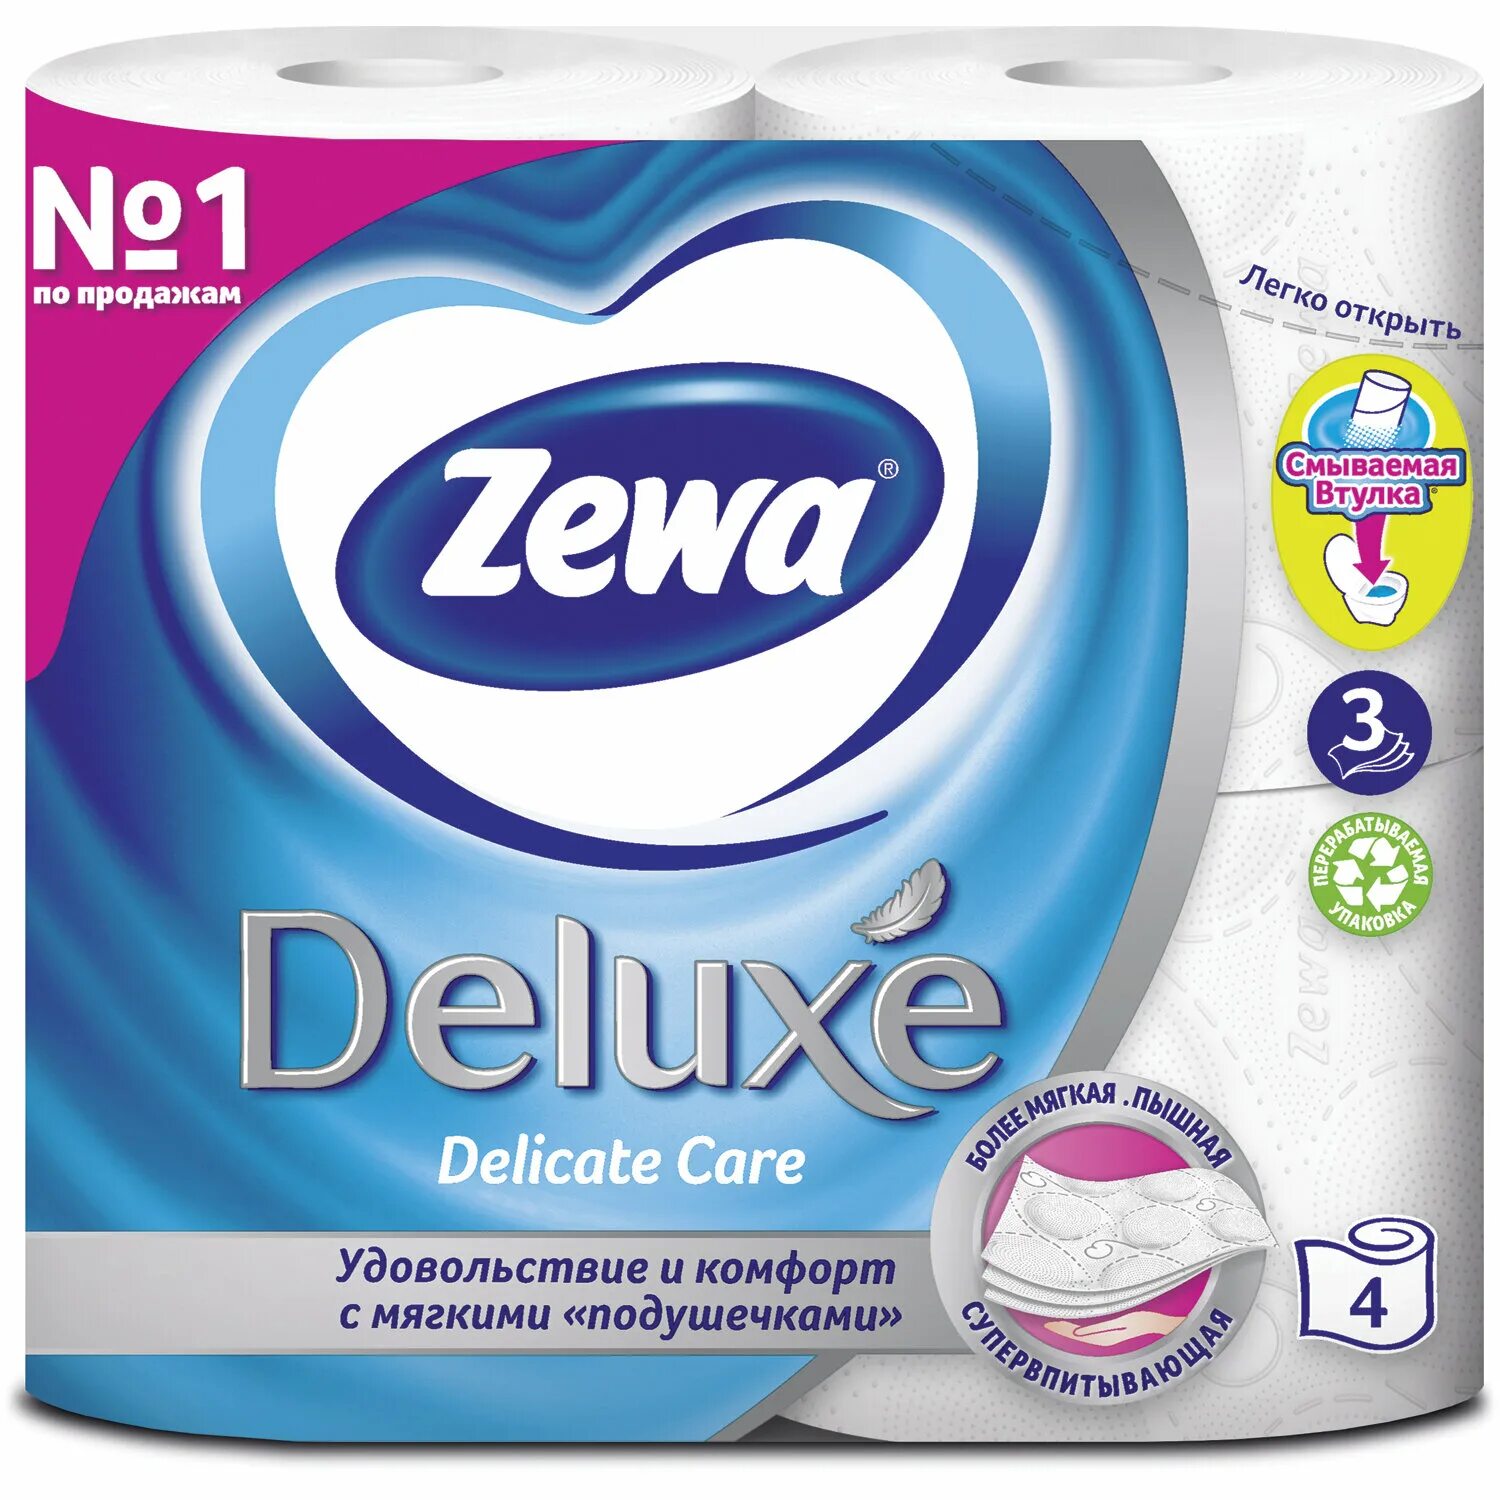 Бумага Zewa Deluxe белая 3 слоя. Туалетная бумага Zewa Deluxe белая 3 слоя 4 рулона. Zewa Kids туалетная бумага. Туалетная бумага Zewa Deluxe трехслойная белая (4 шт.). Zewa natural comfort